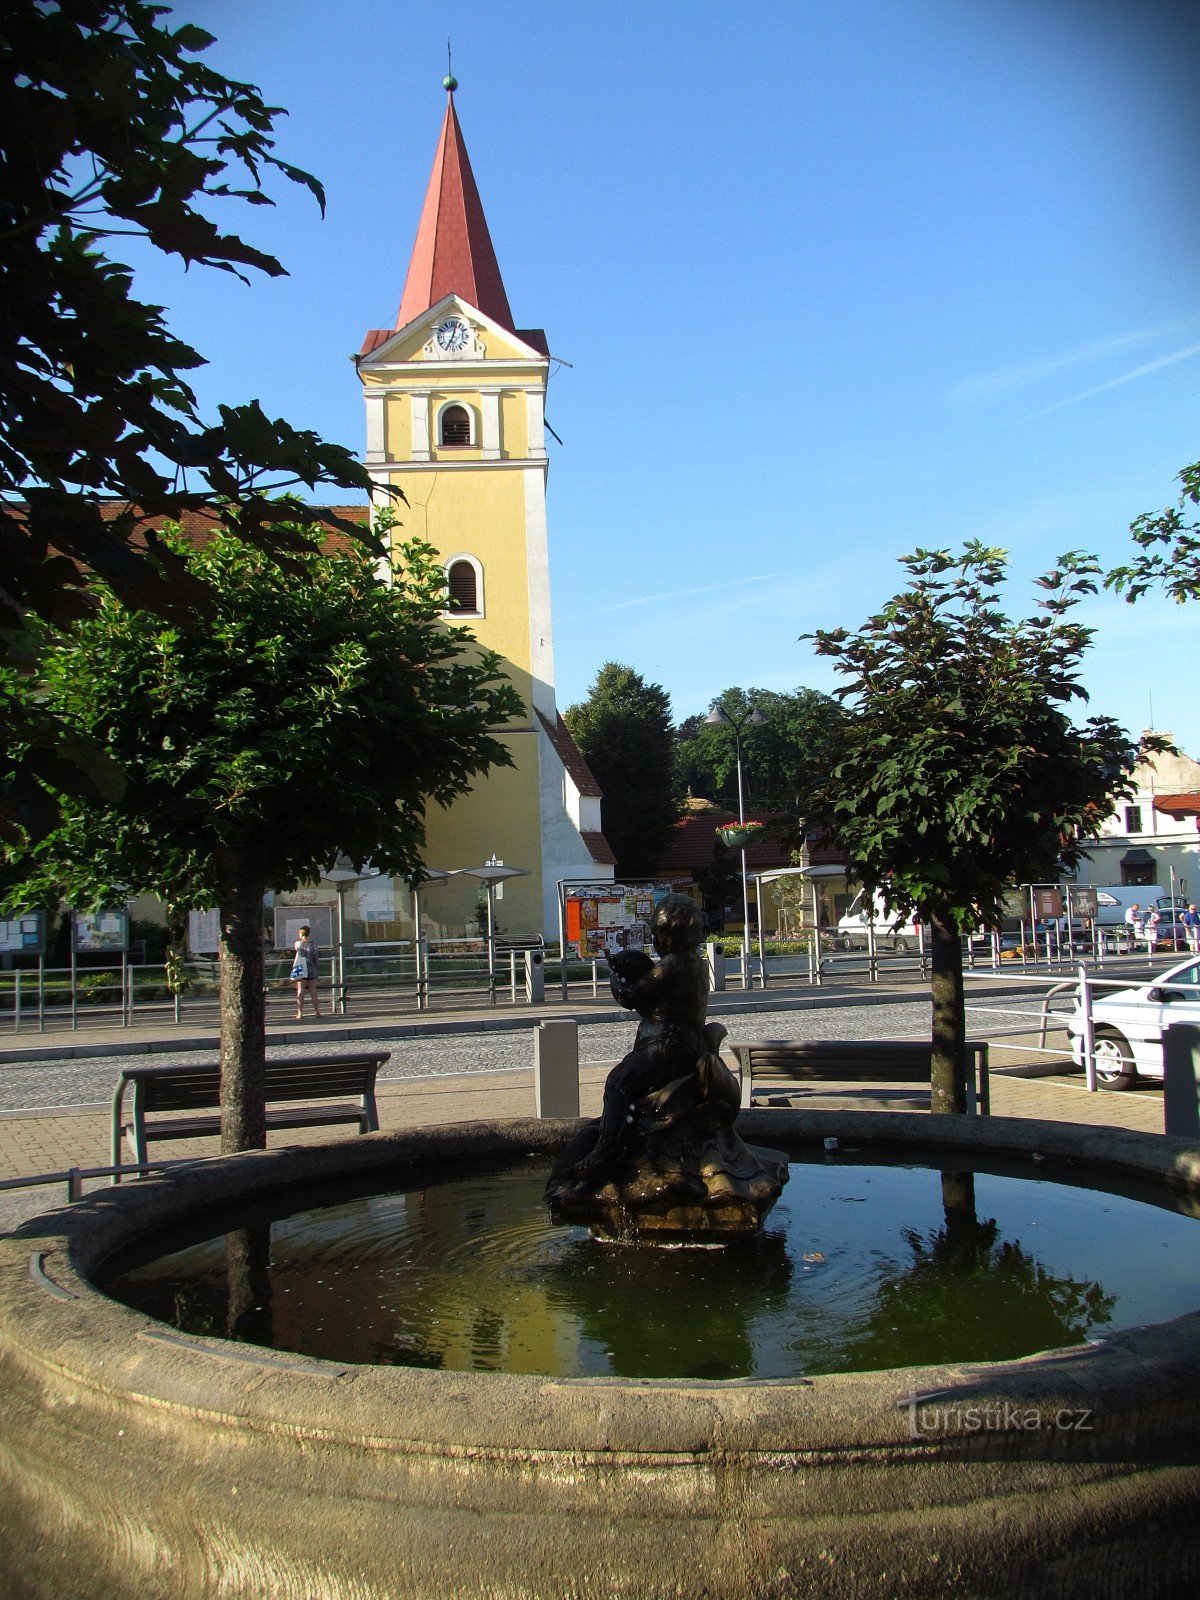 Koryčany - fountain and church